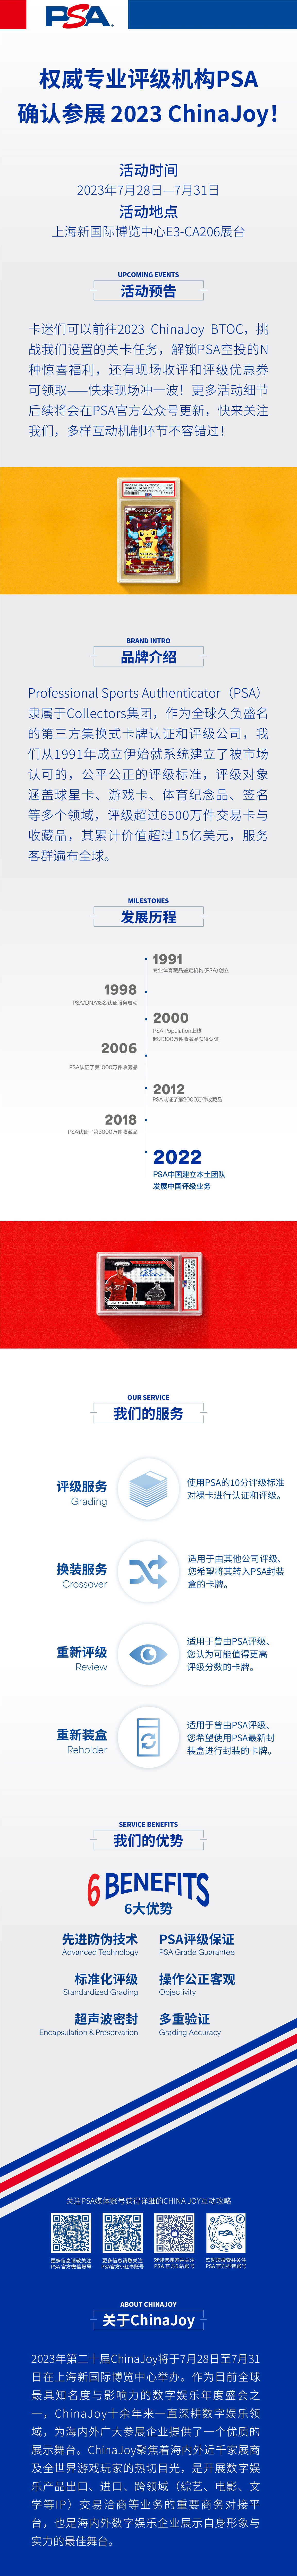 权威专业评级机构 PSA 确认参展 2023 ChinaJo